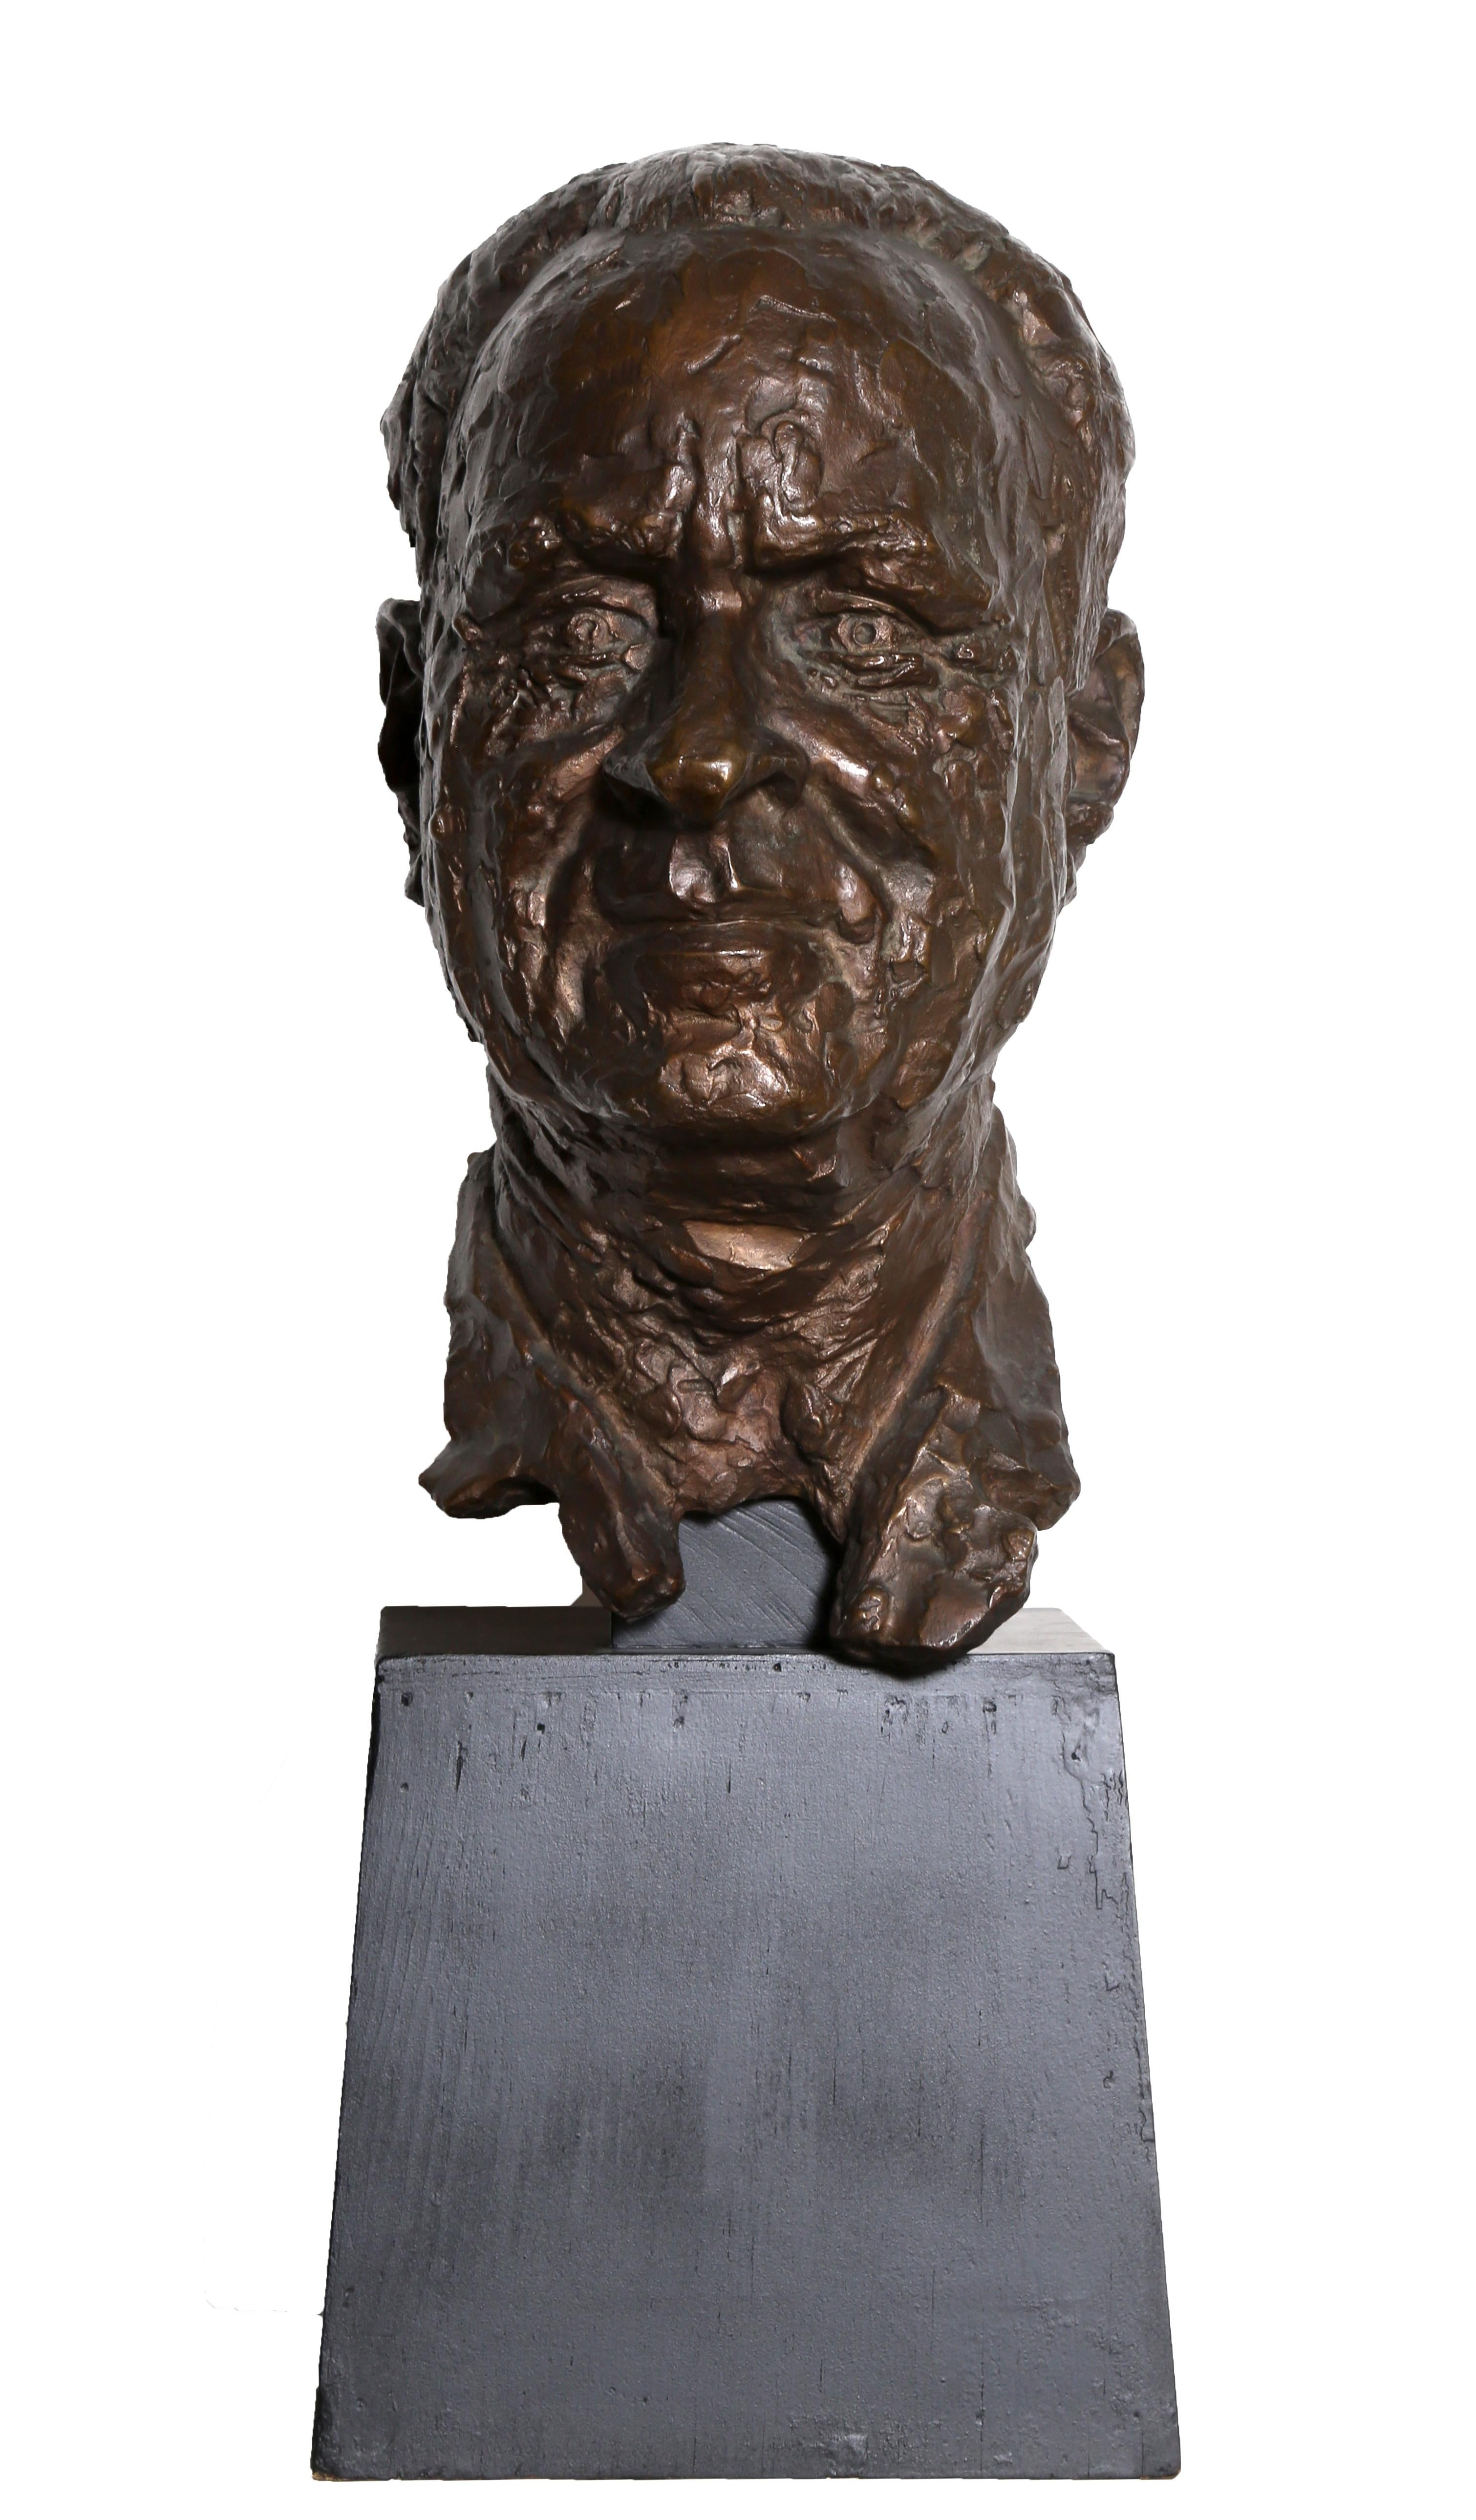 Artiste : Chaim Gross, Autrichien/Américain (1904 - 1991)
Titre : Buste d'un homme
Année : 1967
Médium : Sculpture en bronze, signature inscrite
Taille : 12,5 x 6,5 x 8,5 in. (31,75 x 16,51 x 21,59 cm)
Base : 7 x 8 x 7.5 pouces